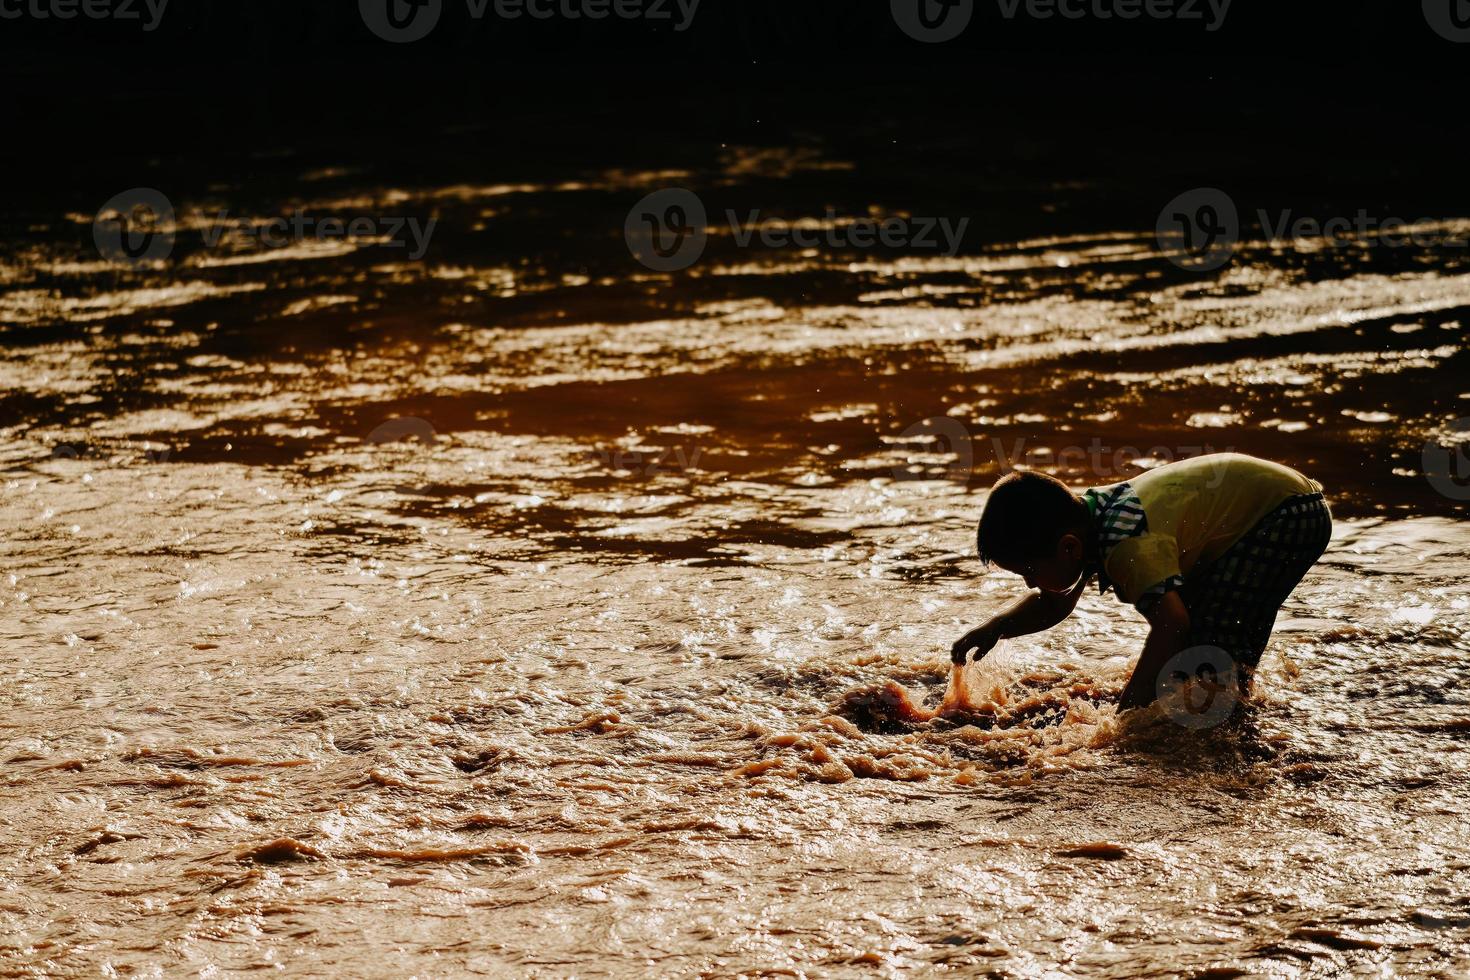 niños en kashgar, Xinjiang jugar felizmente en el agua foto